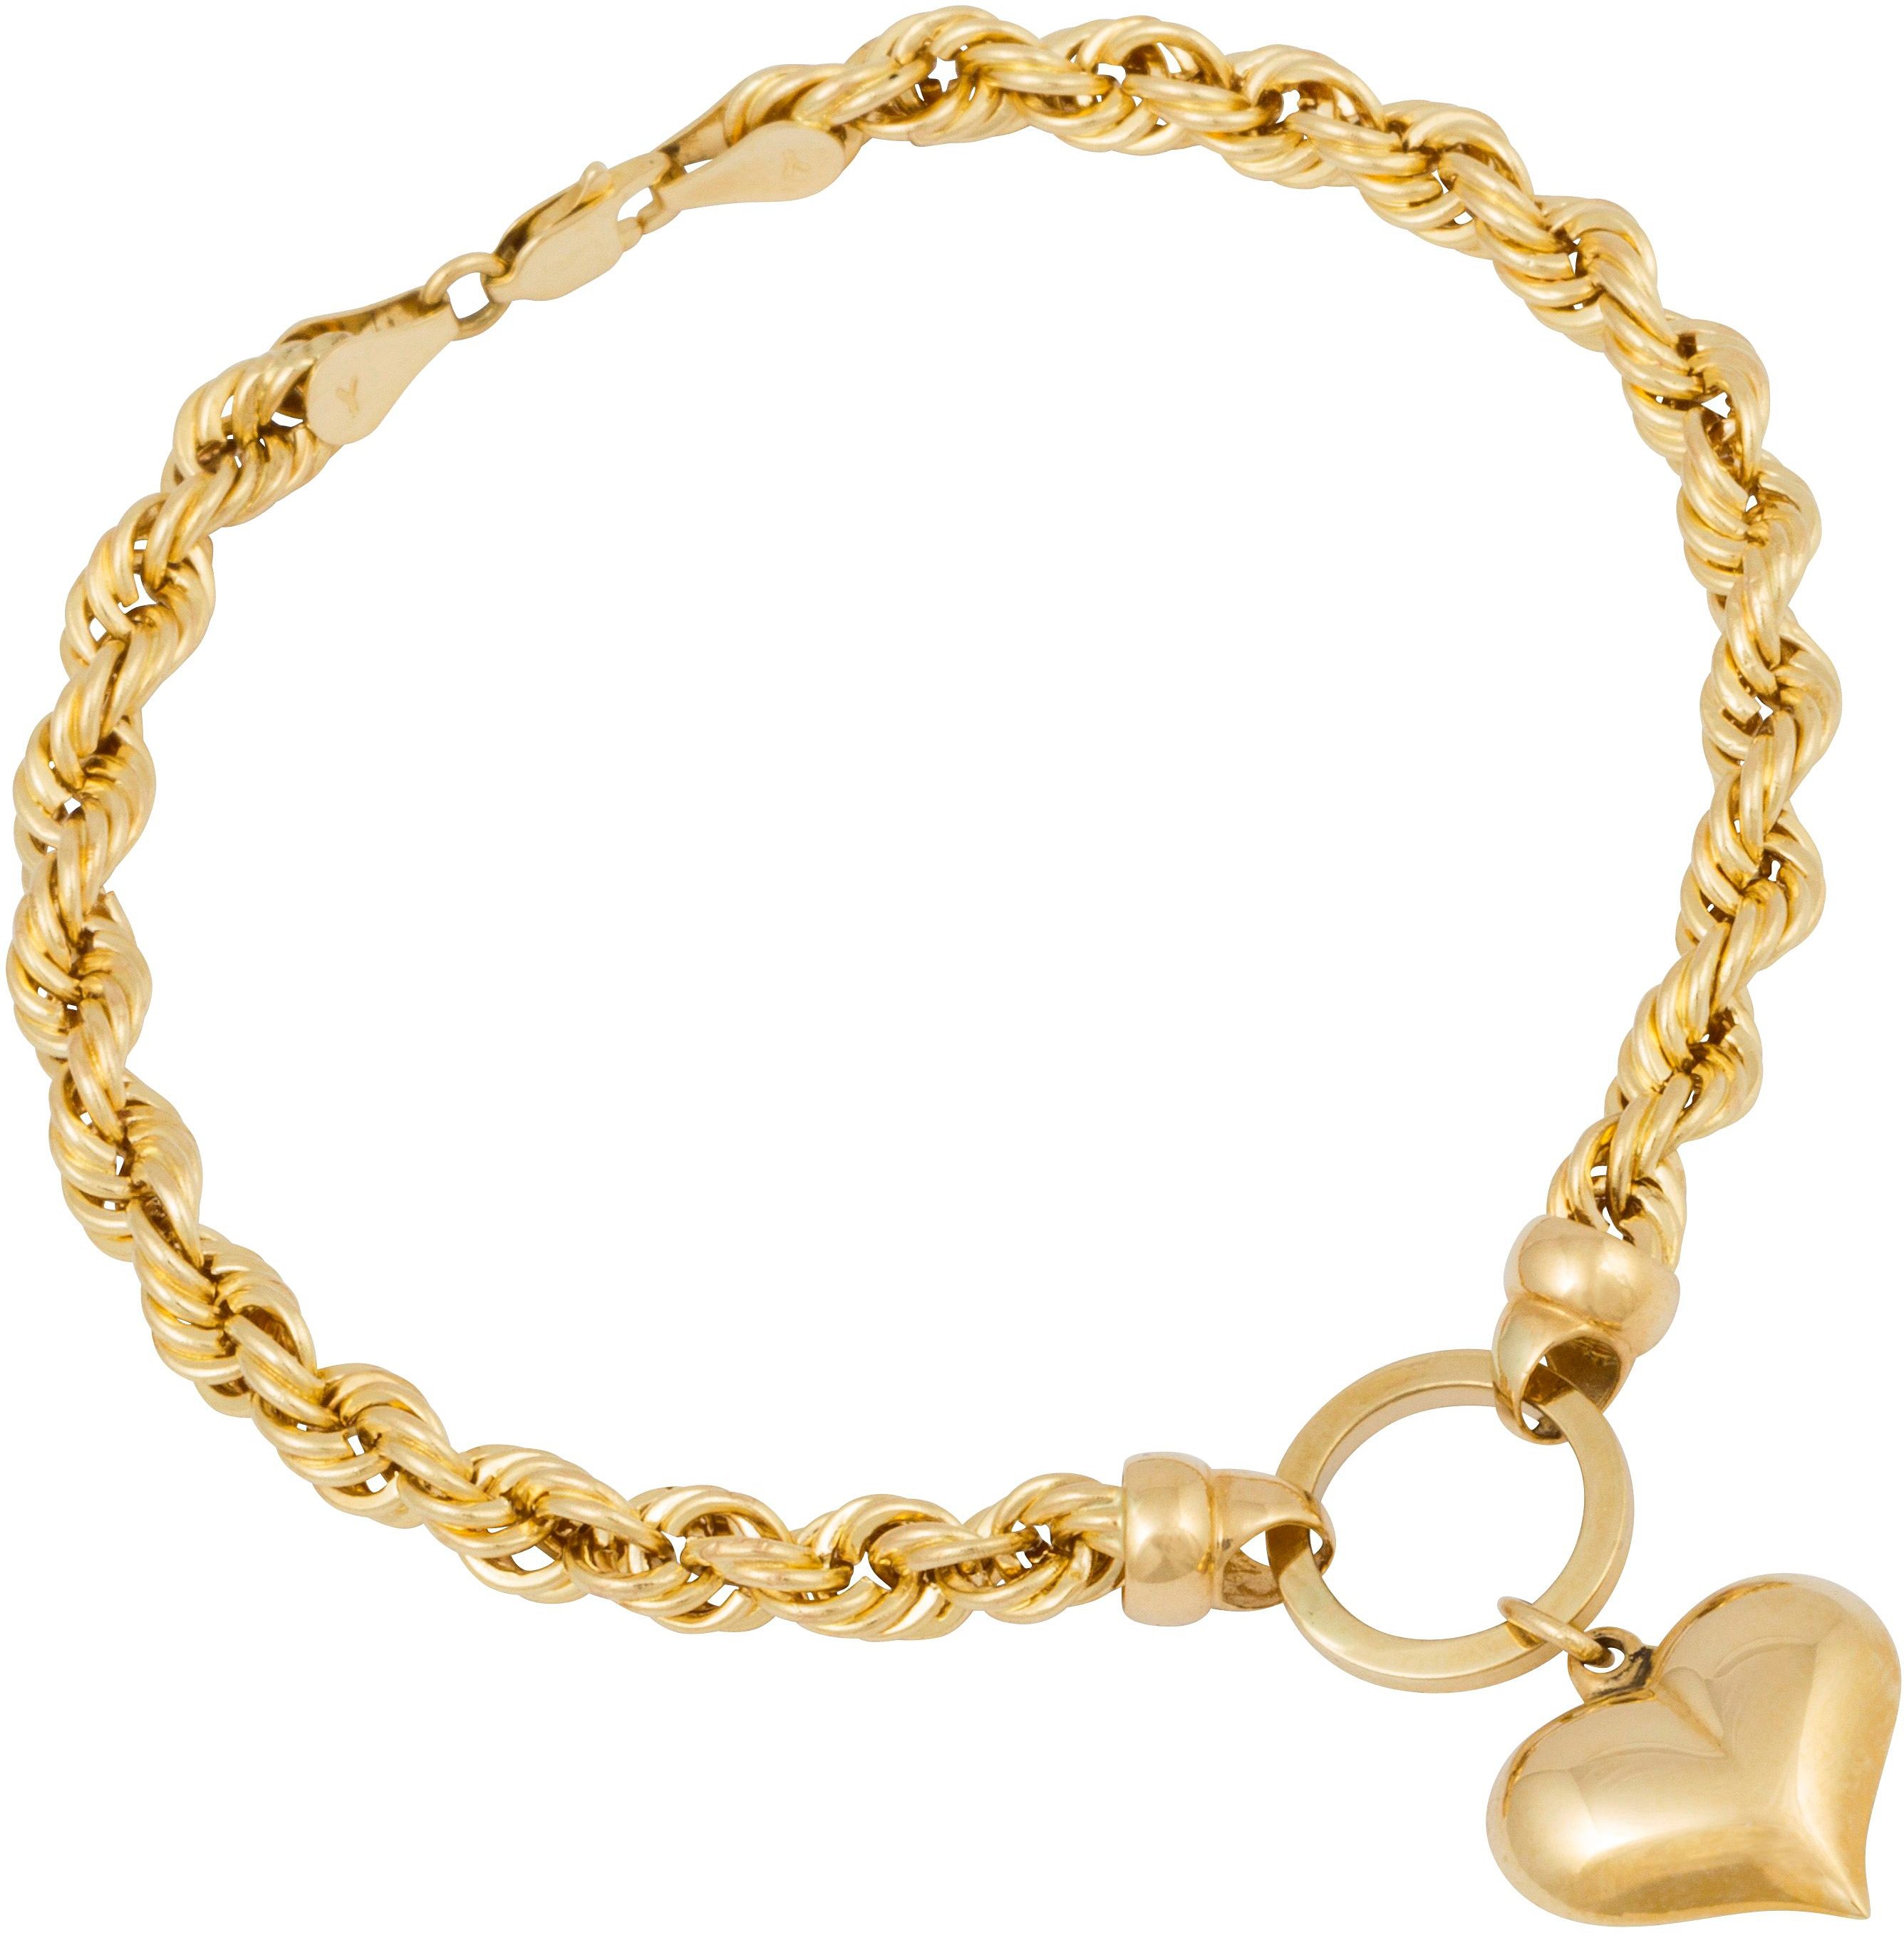 Gelbgold 585 Damen-Armbänder online kaufen | OTTO